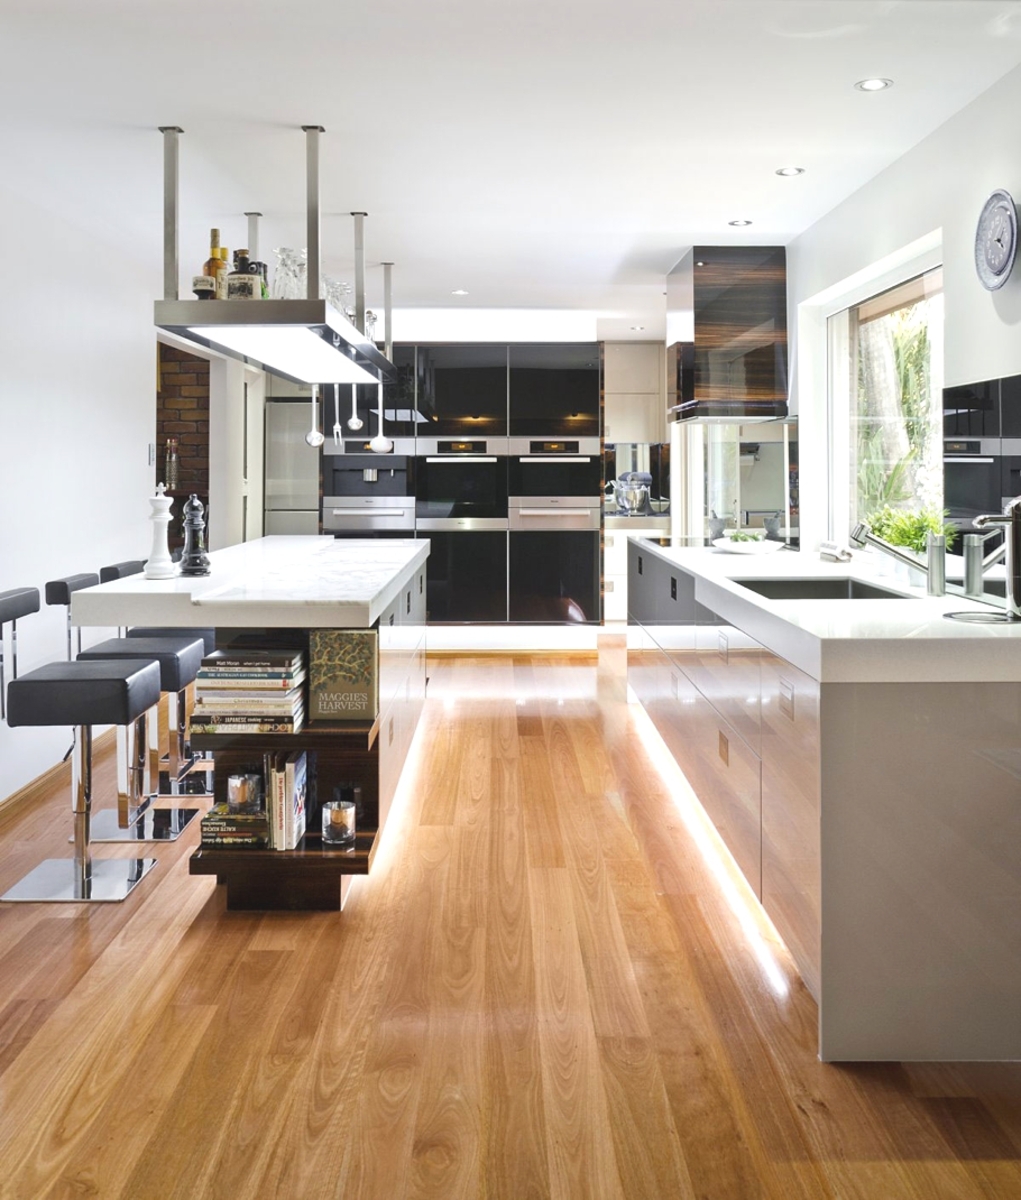 Функциональный дизайн кухни от Interiors by Darren James в стиле минимализма